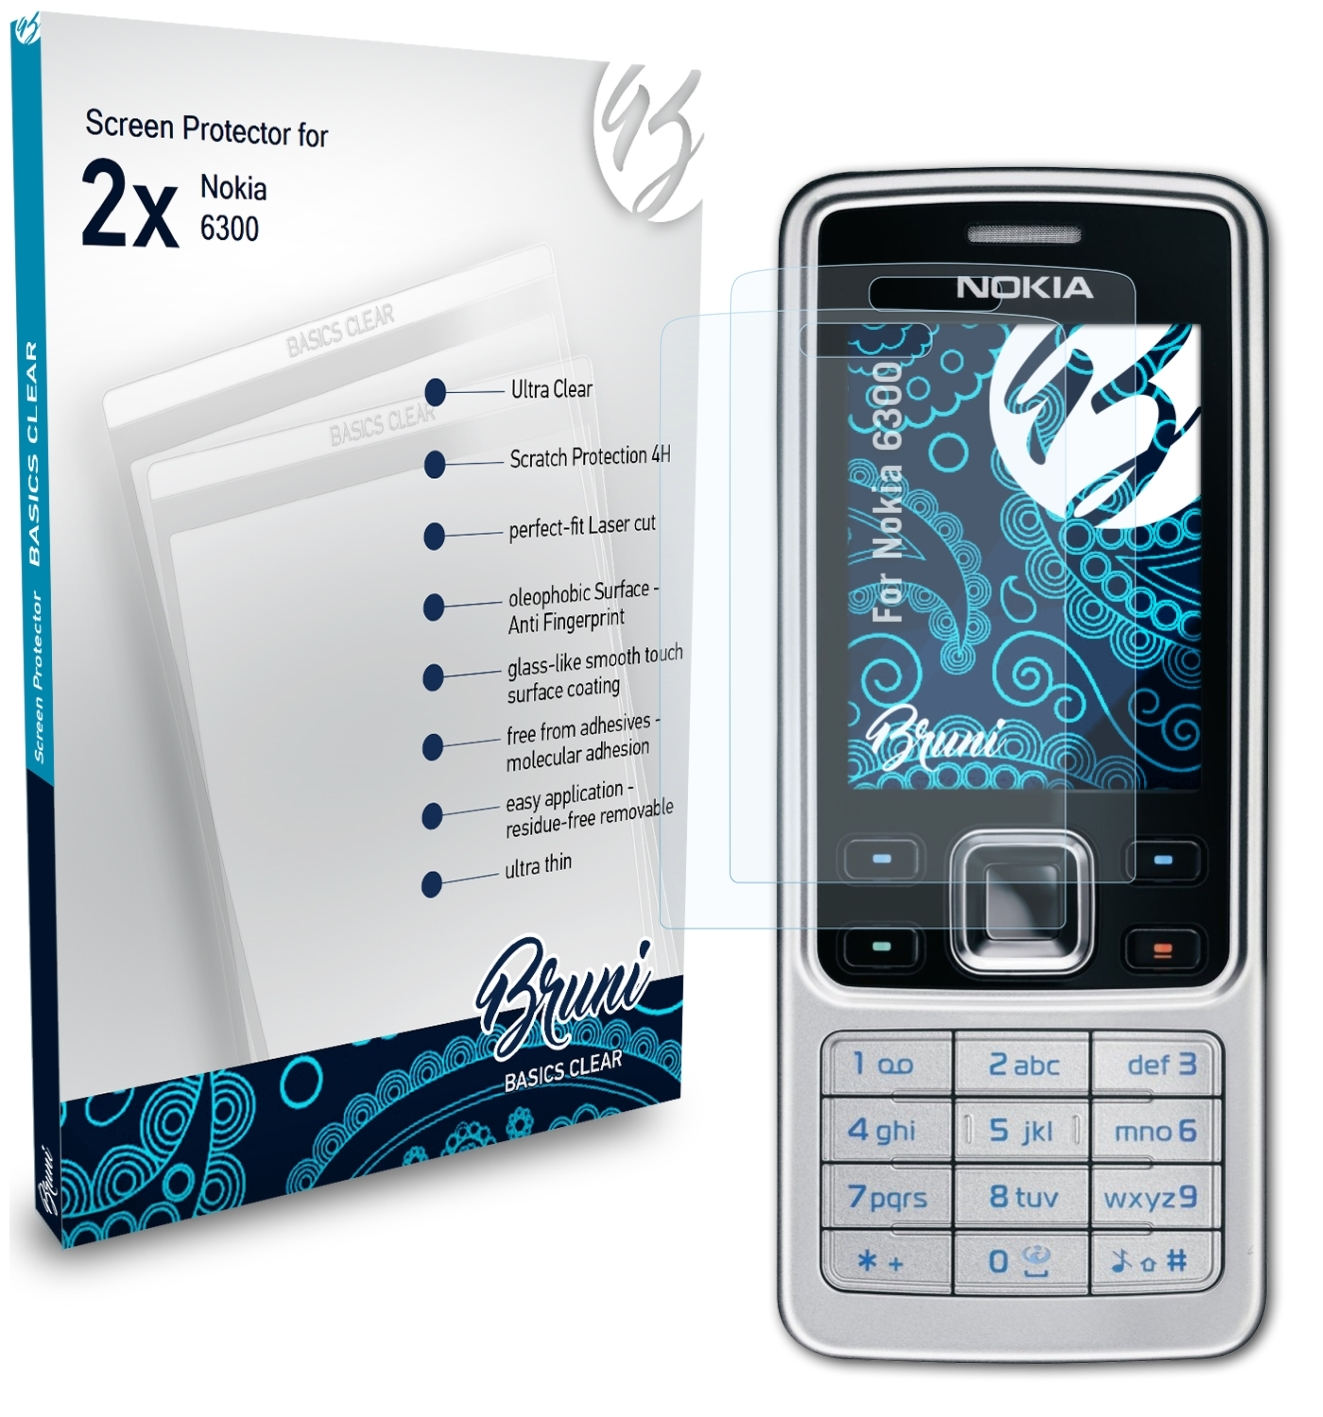 6300) Basics-Clear BRUNI Nokia 2x Schutzfolie(für